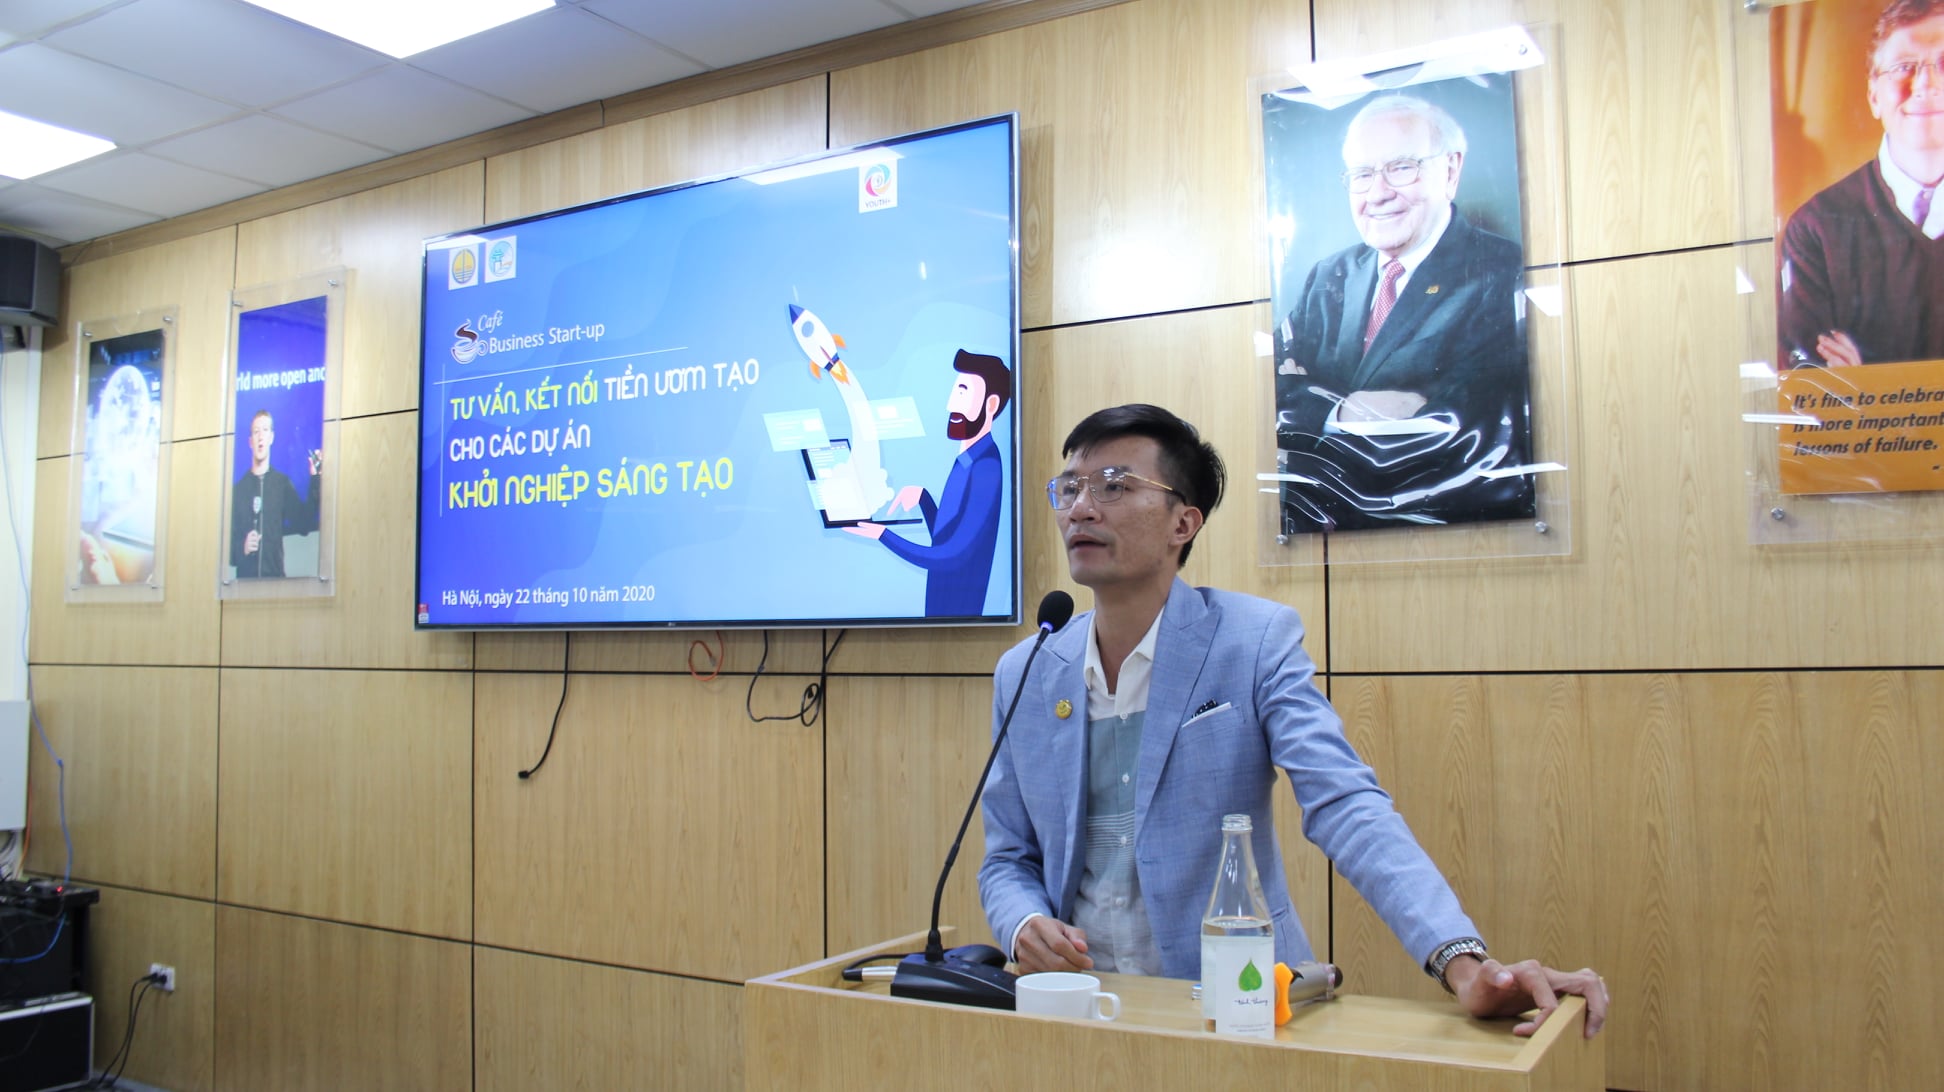 BestB chính thức trở thành đơn vị Quỹ đầu tư khởi nghiệp sáng tạo đầu tiên tại Hà Nội được cấp đầy đủ hồ sơ đăng ký thành lập.